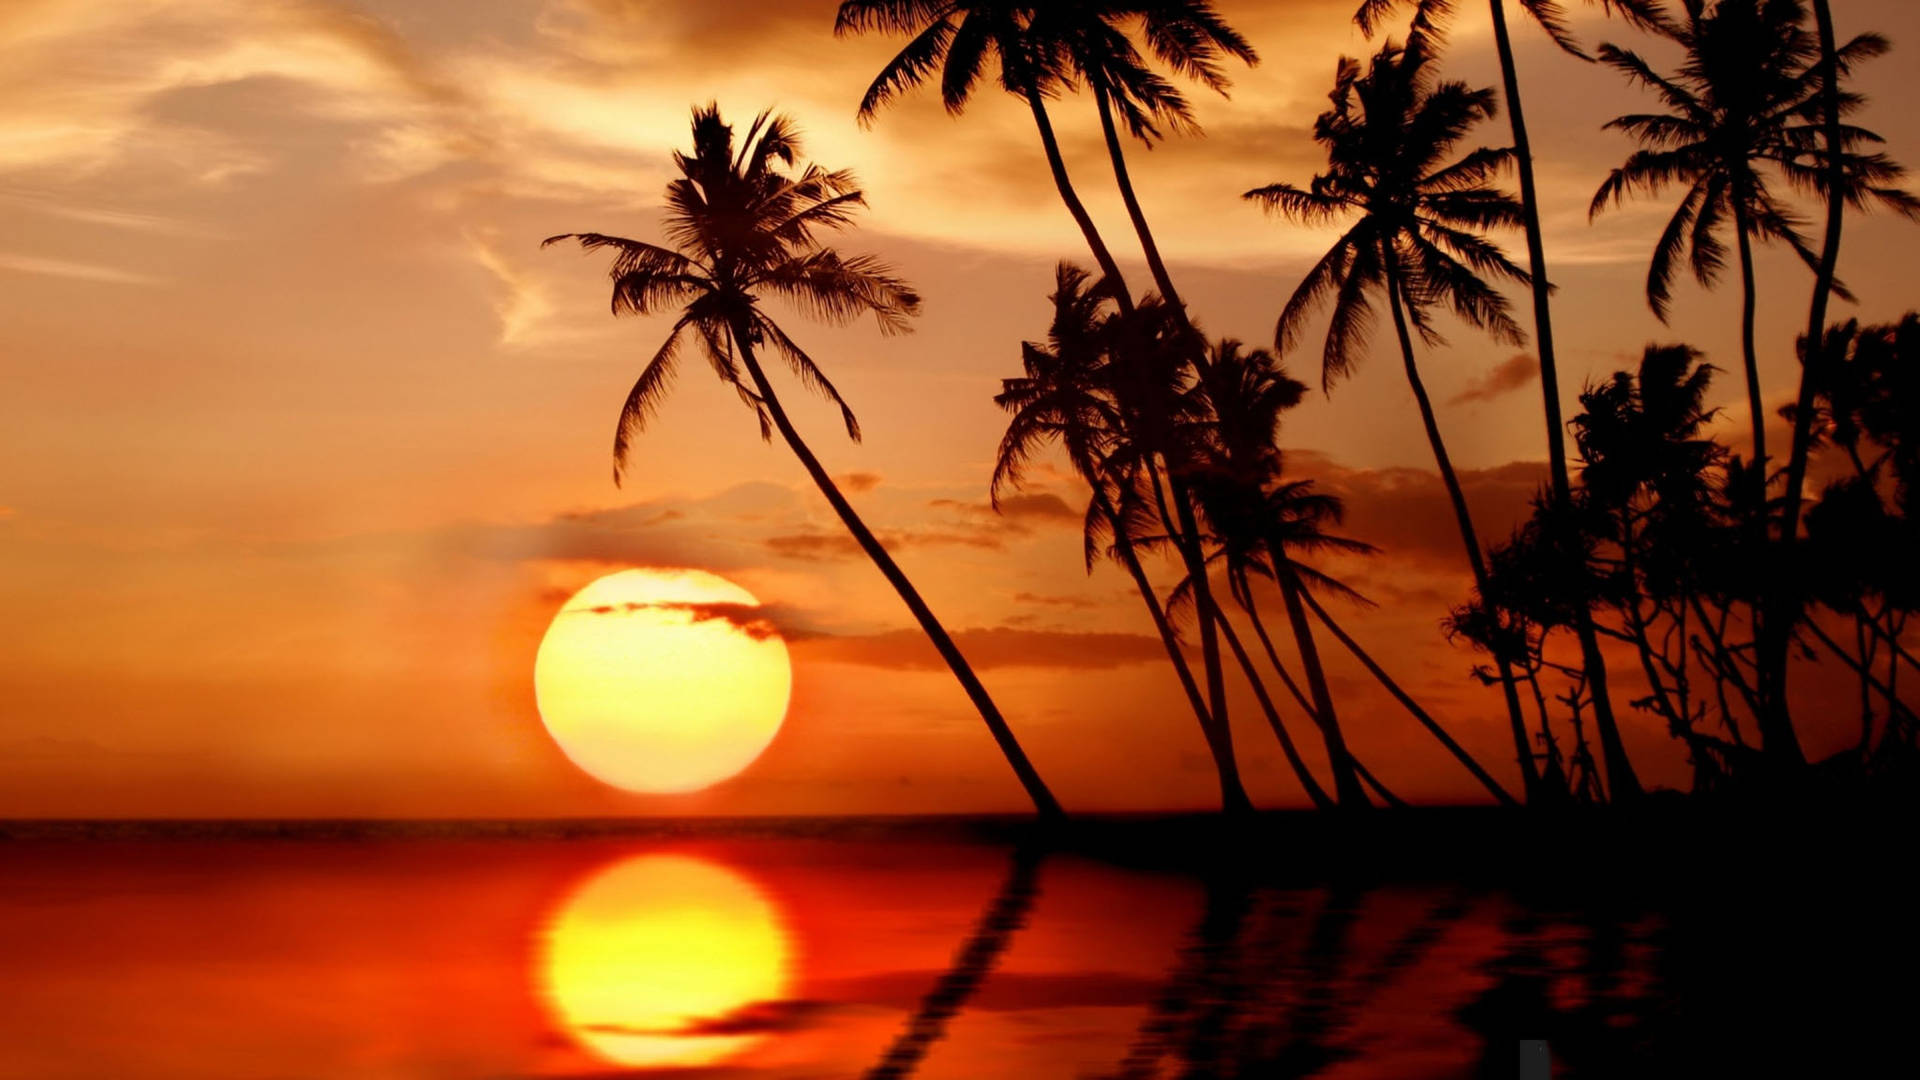 Sri Lanka Beautiful Sunset